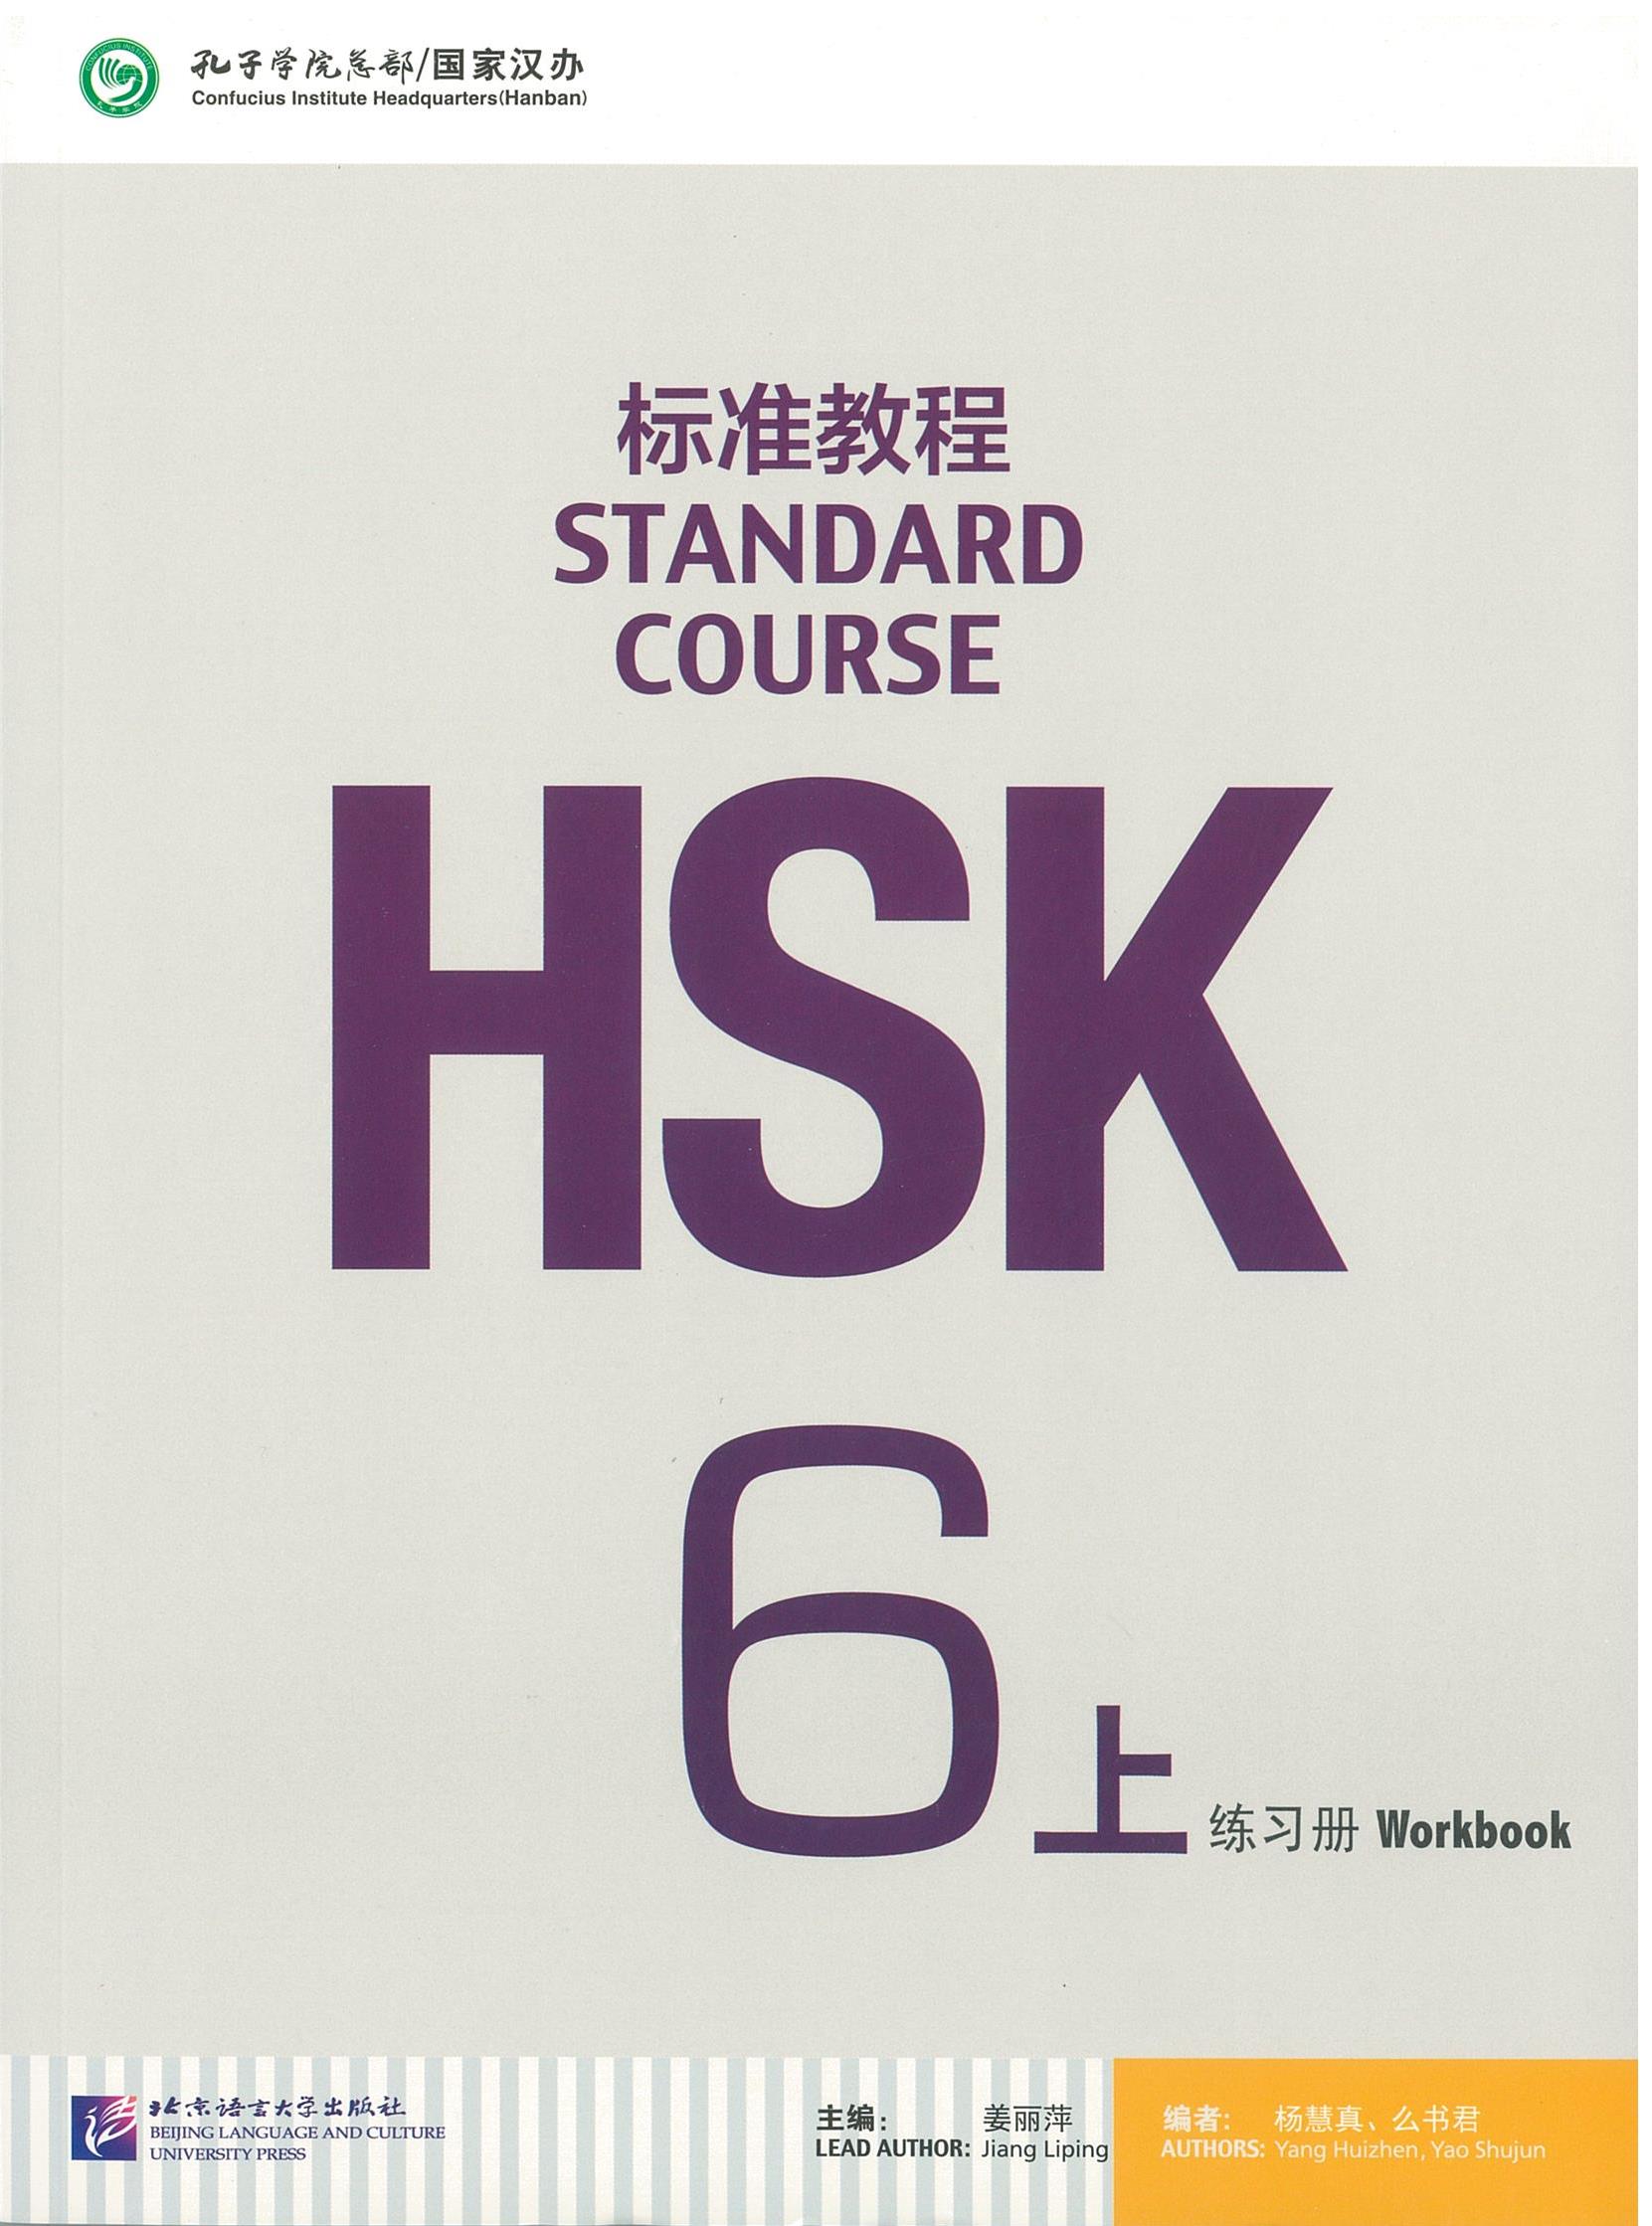 แบบฝึกหัด HSK / Stand Course HSK 6A Workbook / HSK 标准教程 6上 练习册